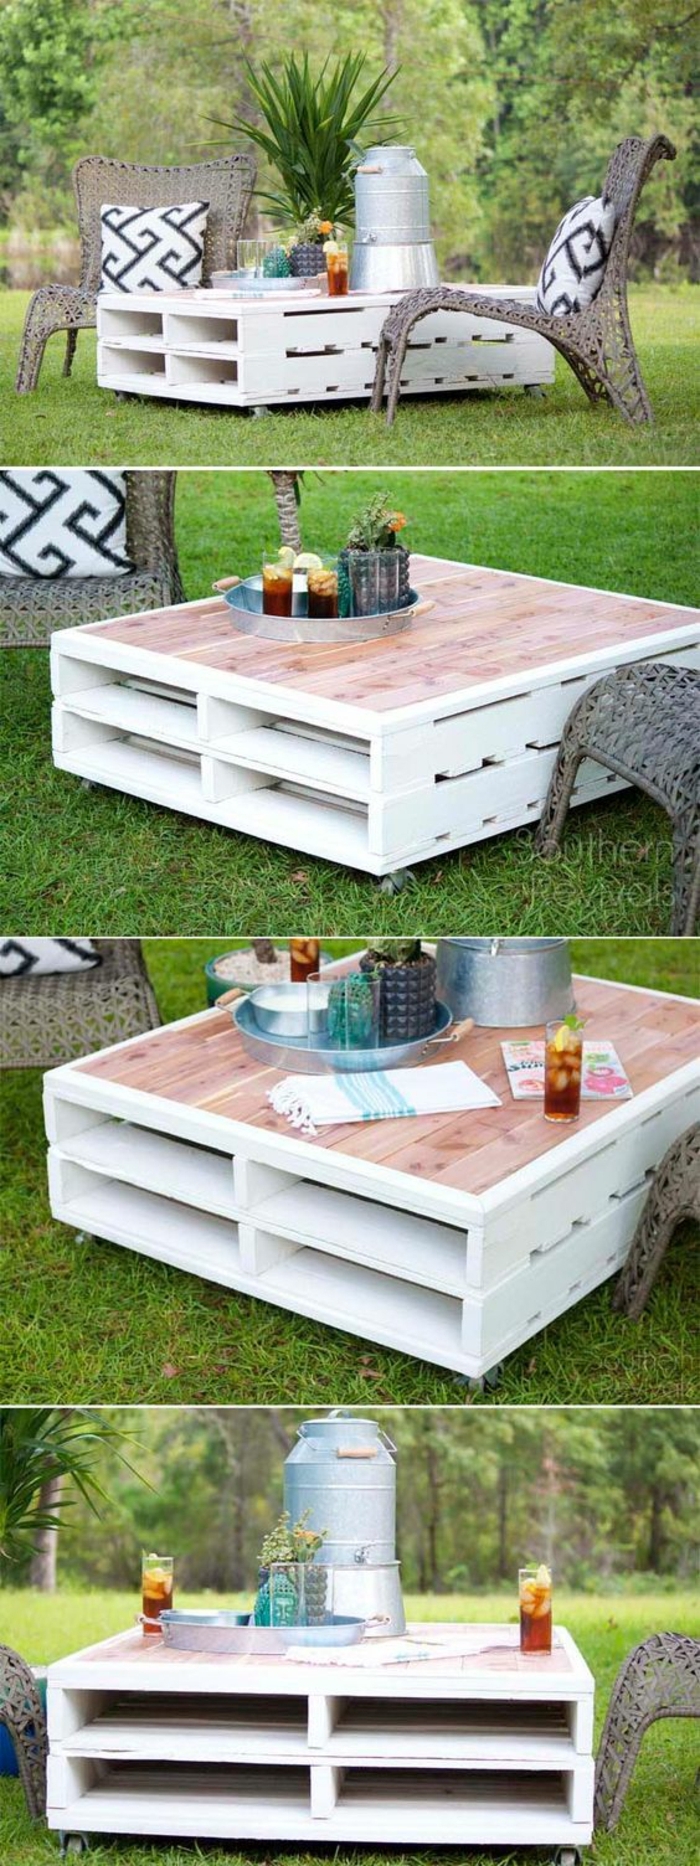 muebles con cajas de fruta, mesa de jardín con madera reciclada en blanco y rosa, sillas de rattan con cojines